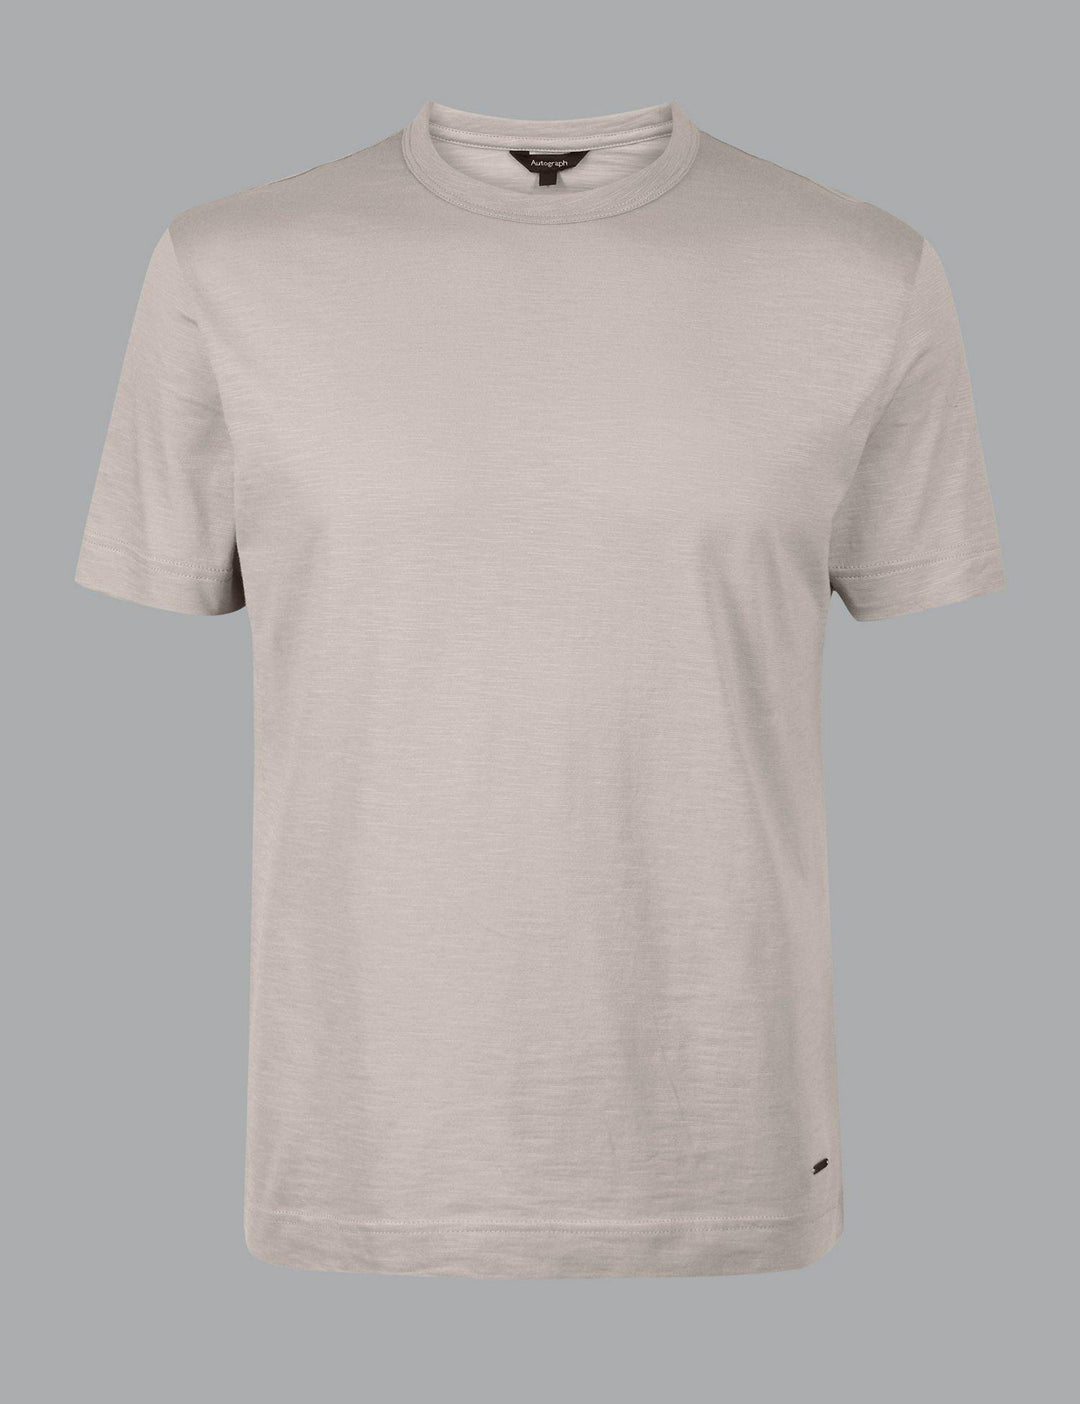 M&S Men S/S T-Shirt T28/4830A